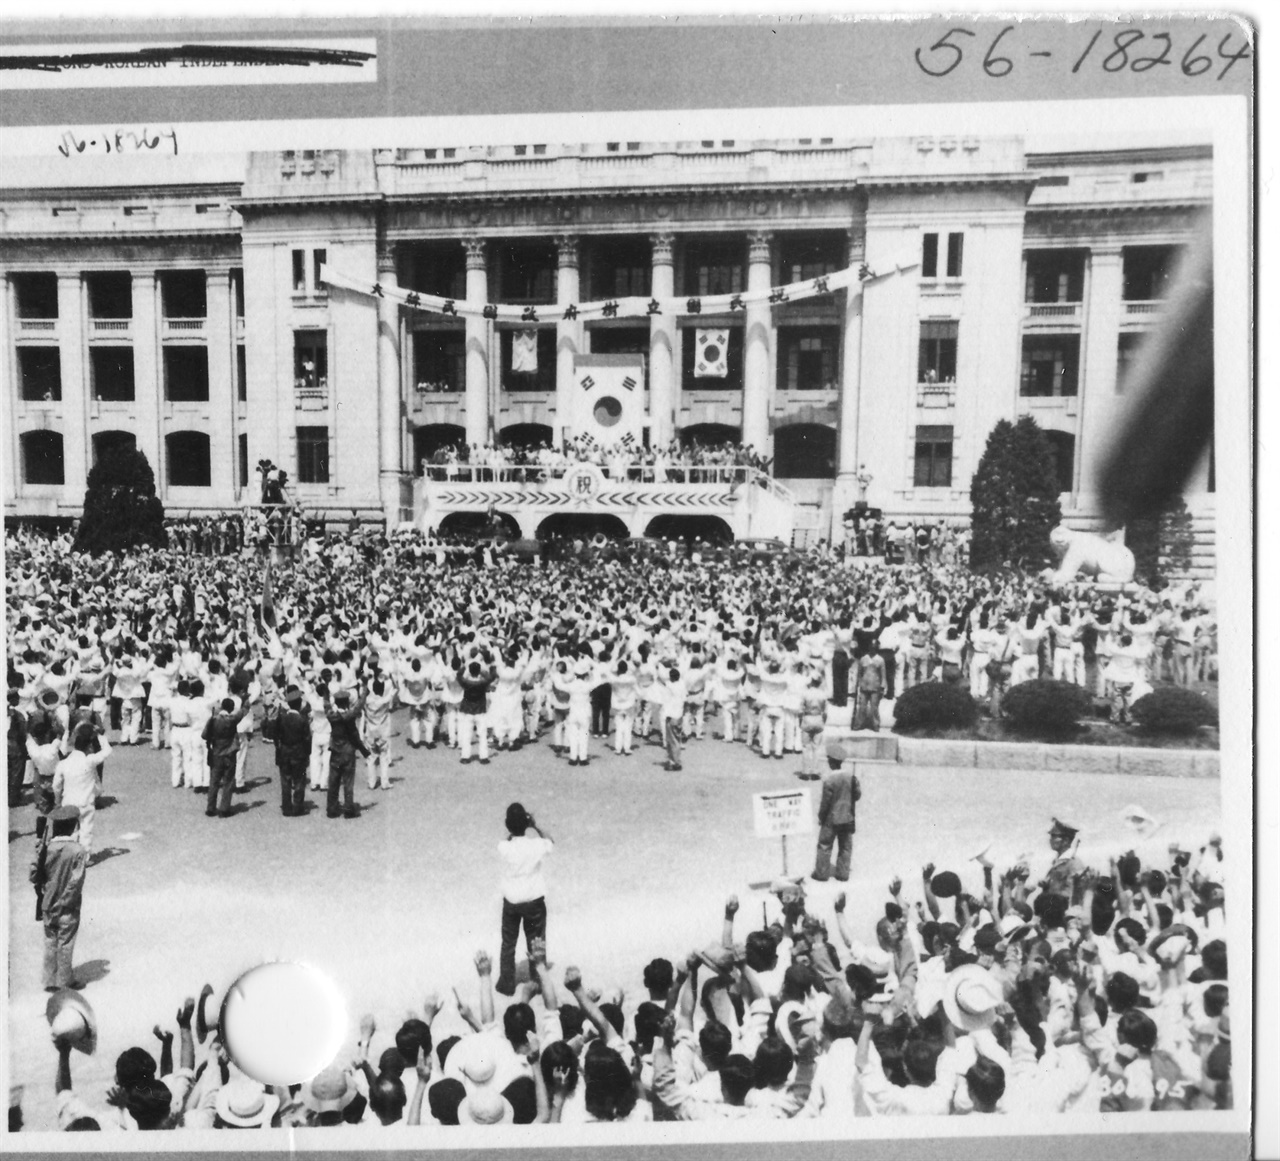 1948. 8. 15. 서울, 중앙청 광장에서 열린 대한민국정부 수립 경축식 
